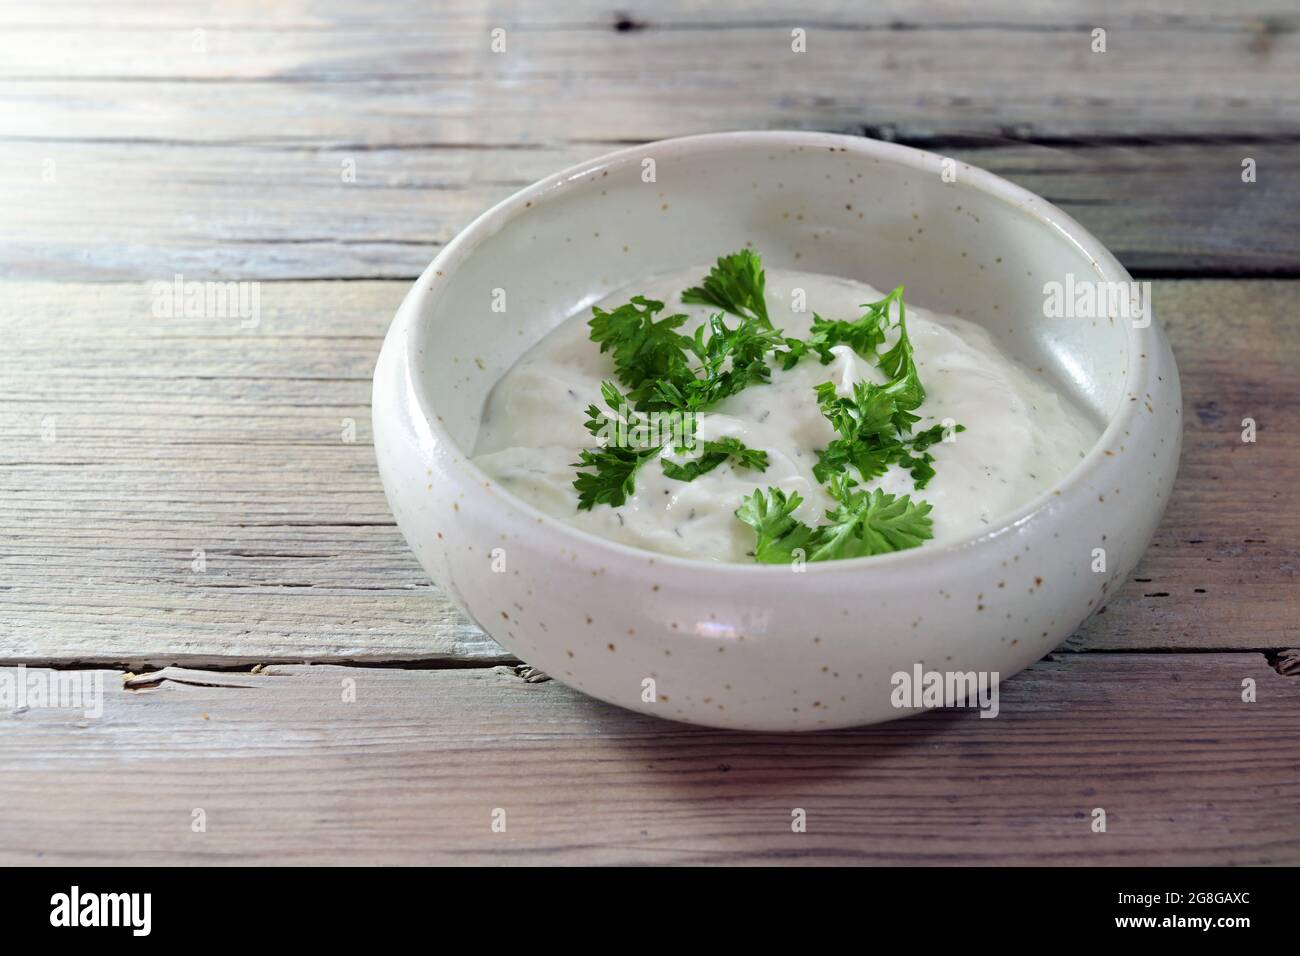 Trempez le yaourt avec les herbes et la garniture de persil dans un petit bol en céramique sur une table en bois rustique clair, espace de copie, foyer sélectionné, profondeur de champ étroite Banque D'Images